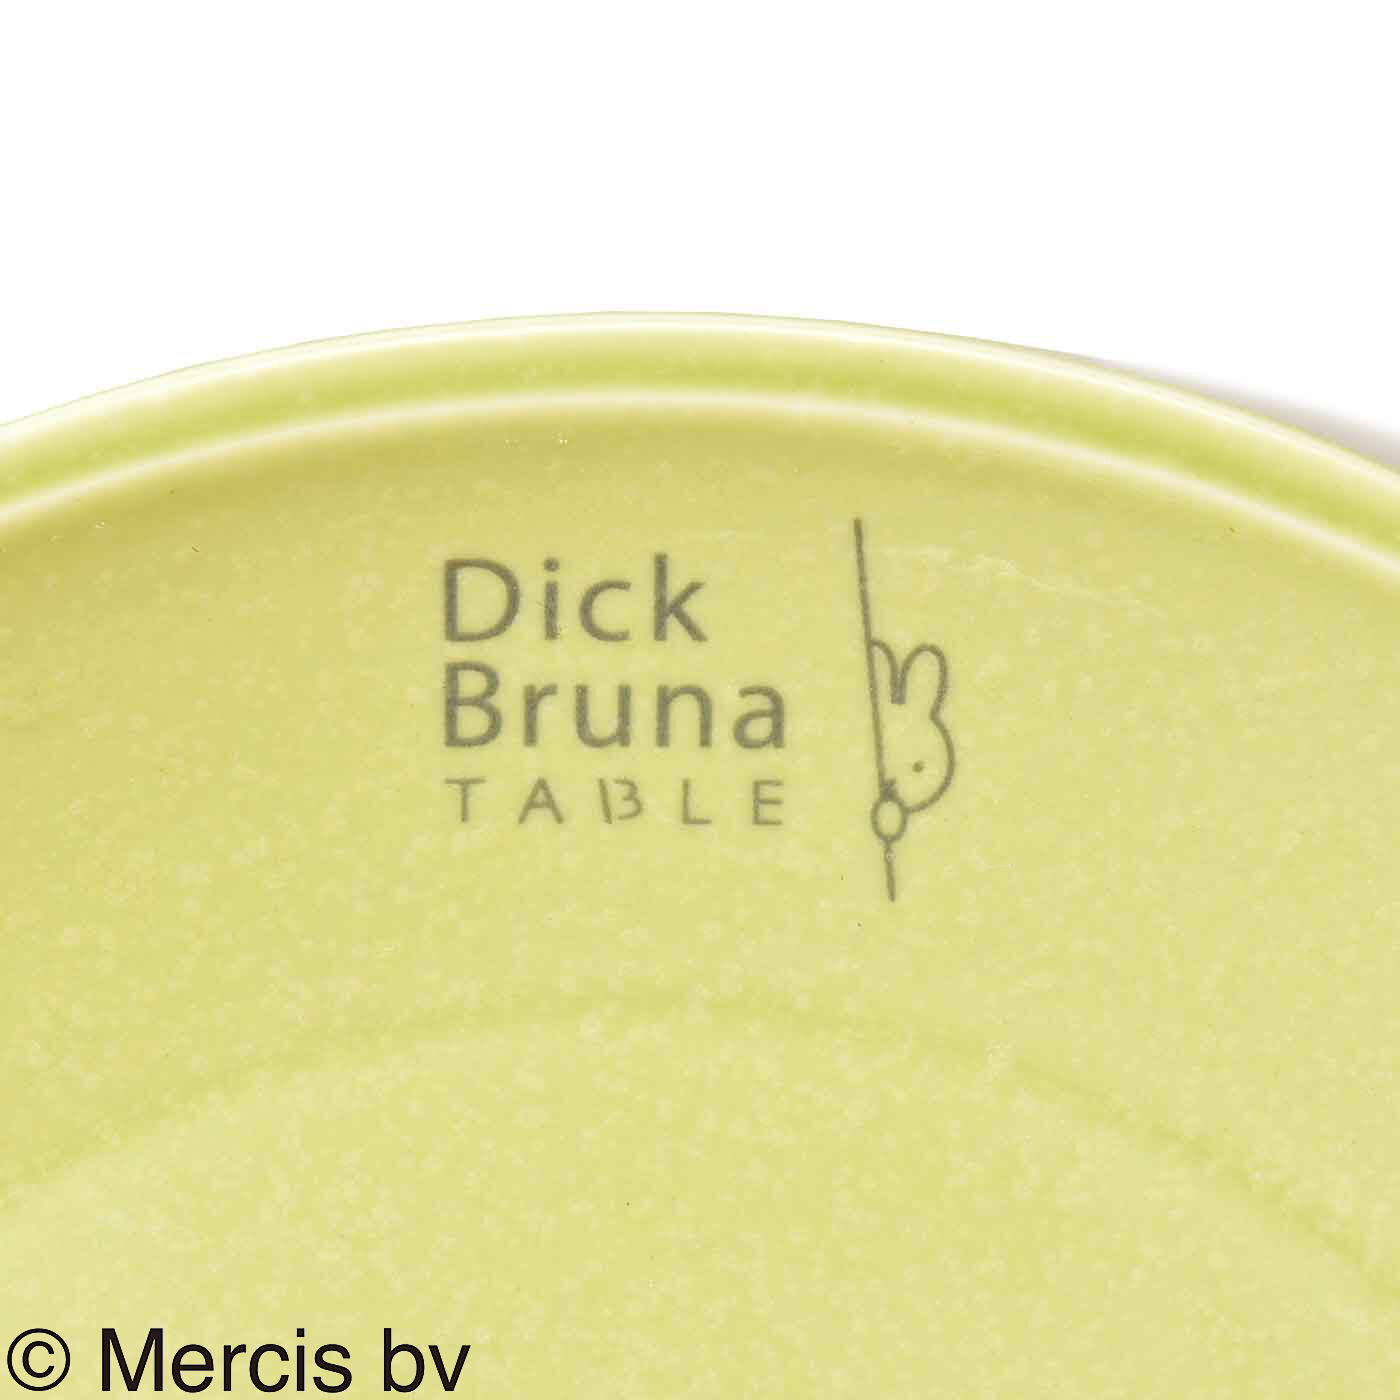 ディック・ブルーナ テーブル|Dick Bruna TABLE  テーブルを華やかに彩るプレート〈Ｍ〉|ロゴが入っています